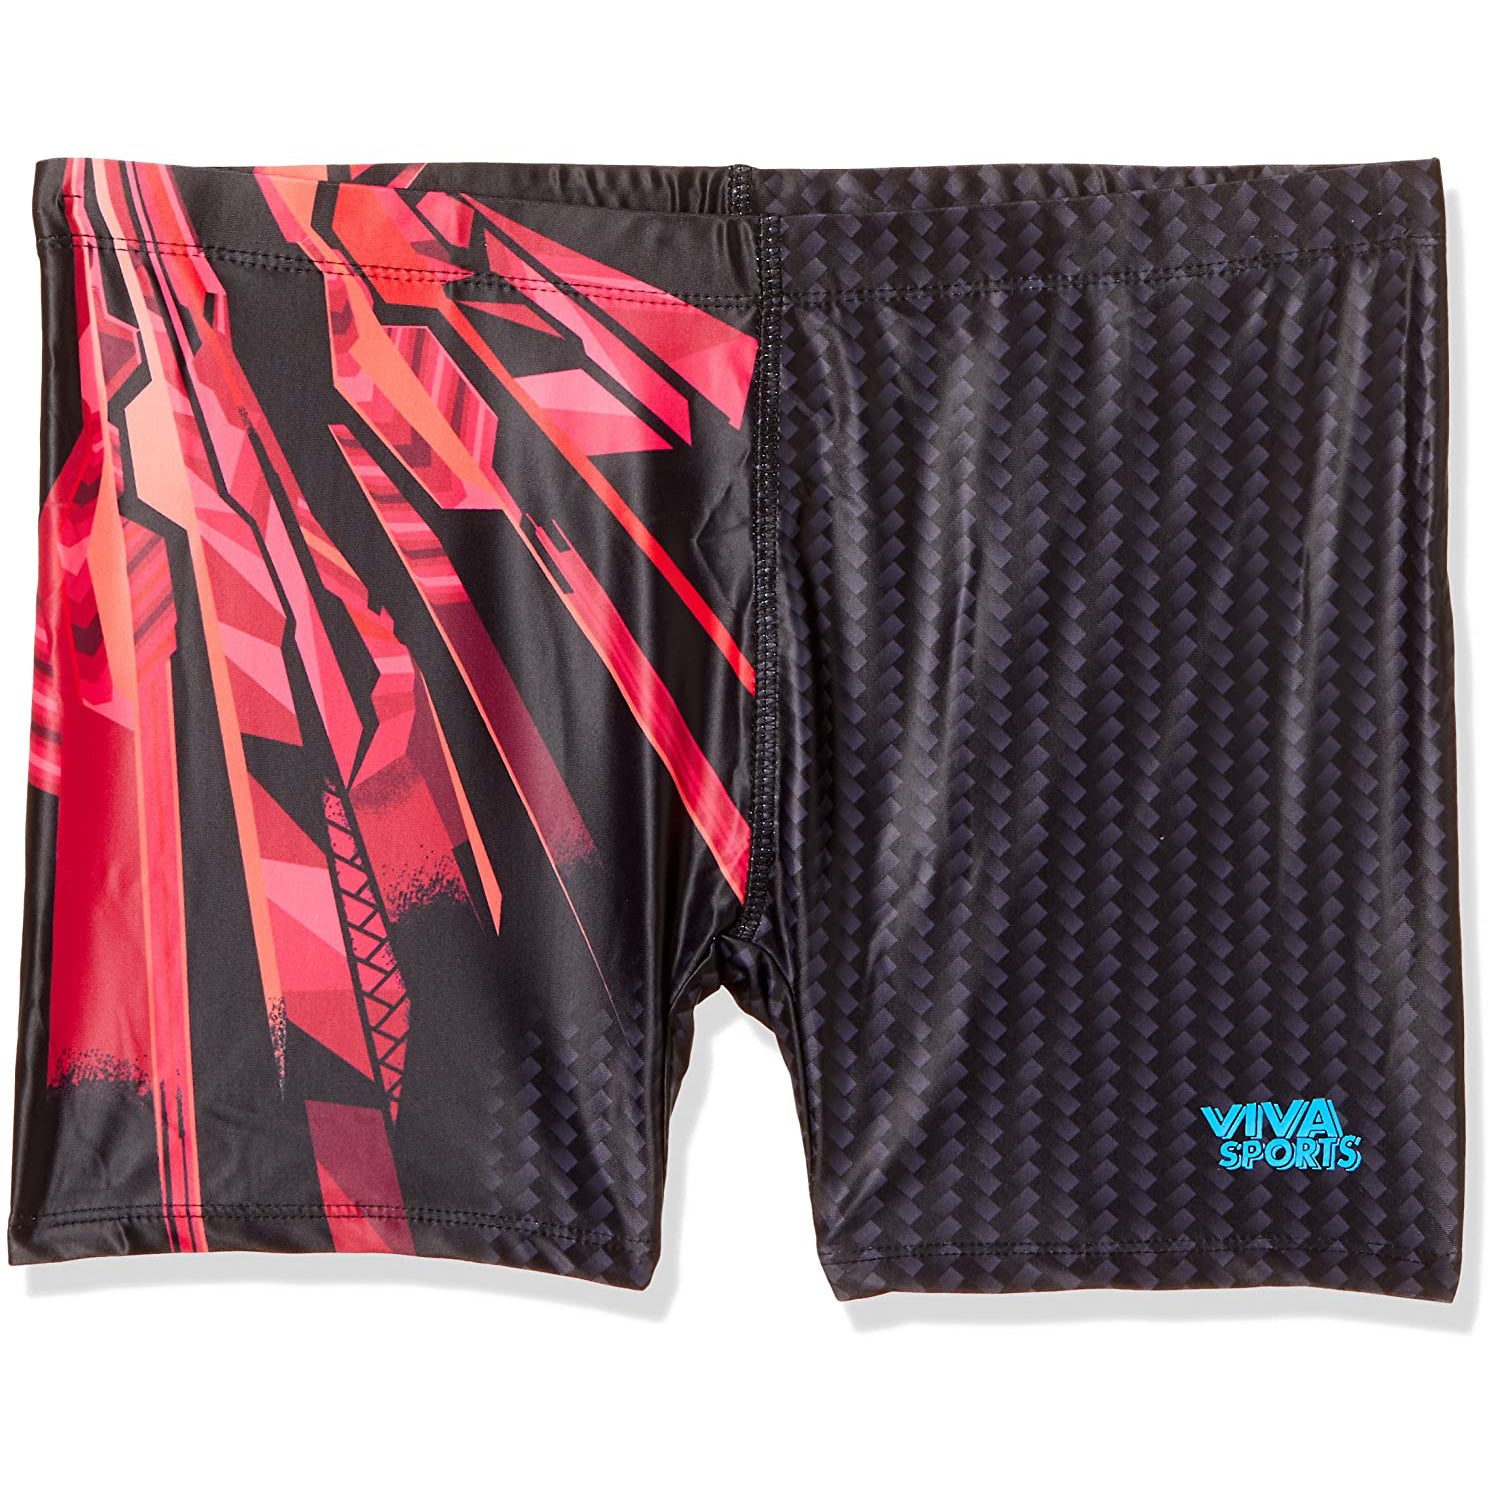 Viva VST-003 Trunks for Men's , Grey/Red - Best Price online Prokicksports.com